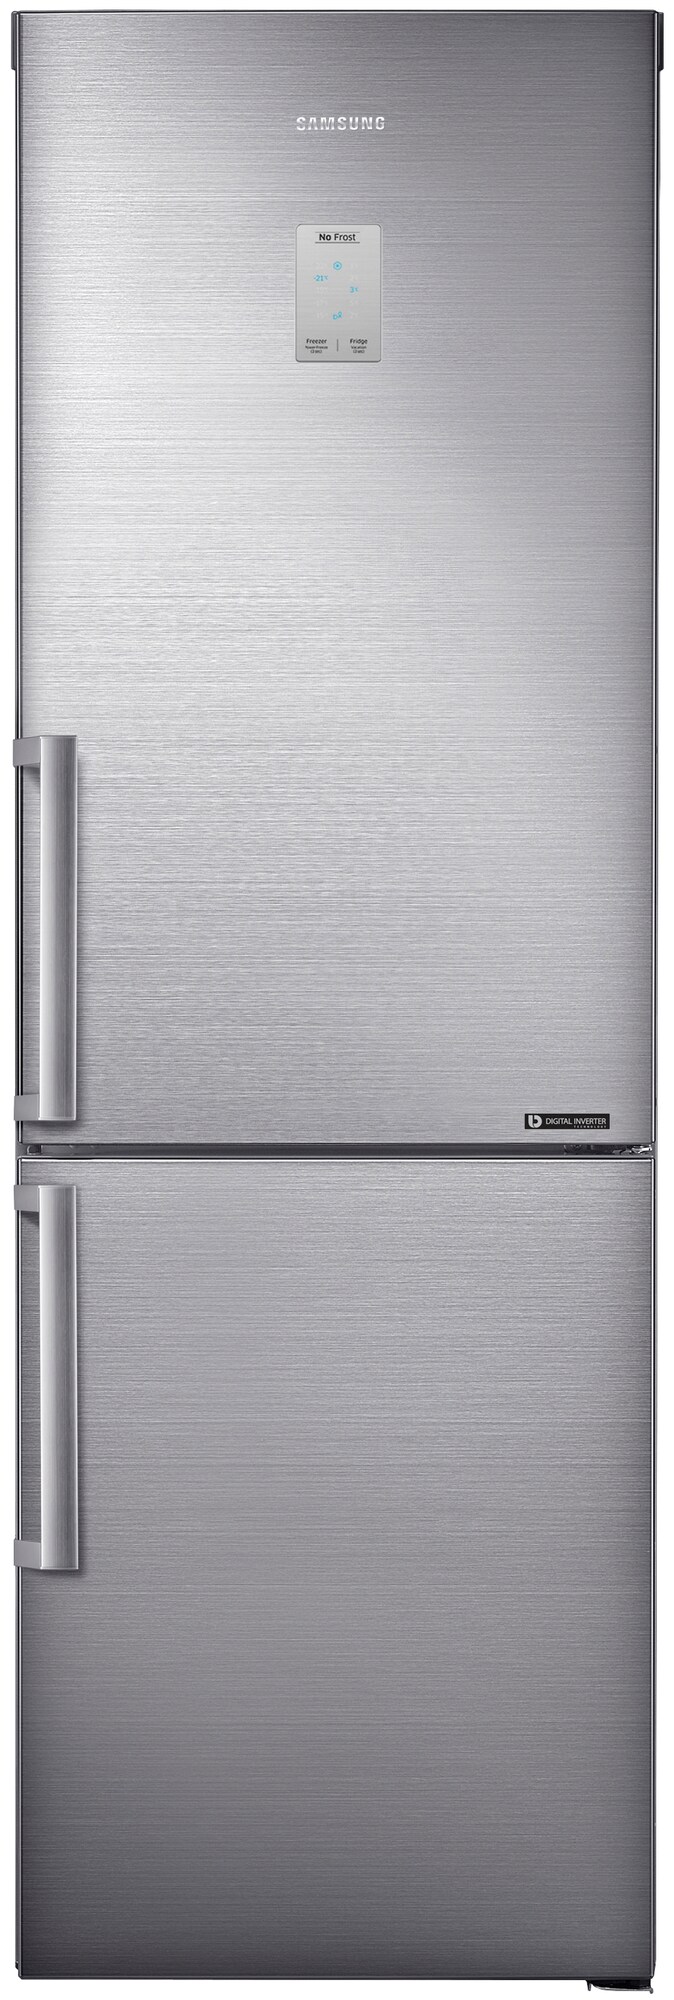 Kylskåp utan frys - köp ett billigt kylskåp i dag - Elgiganten